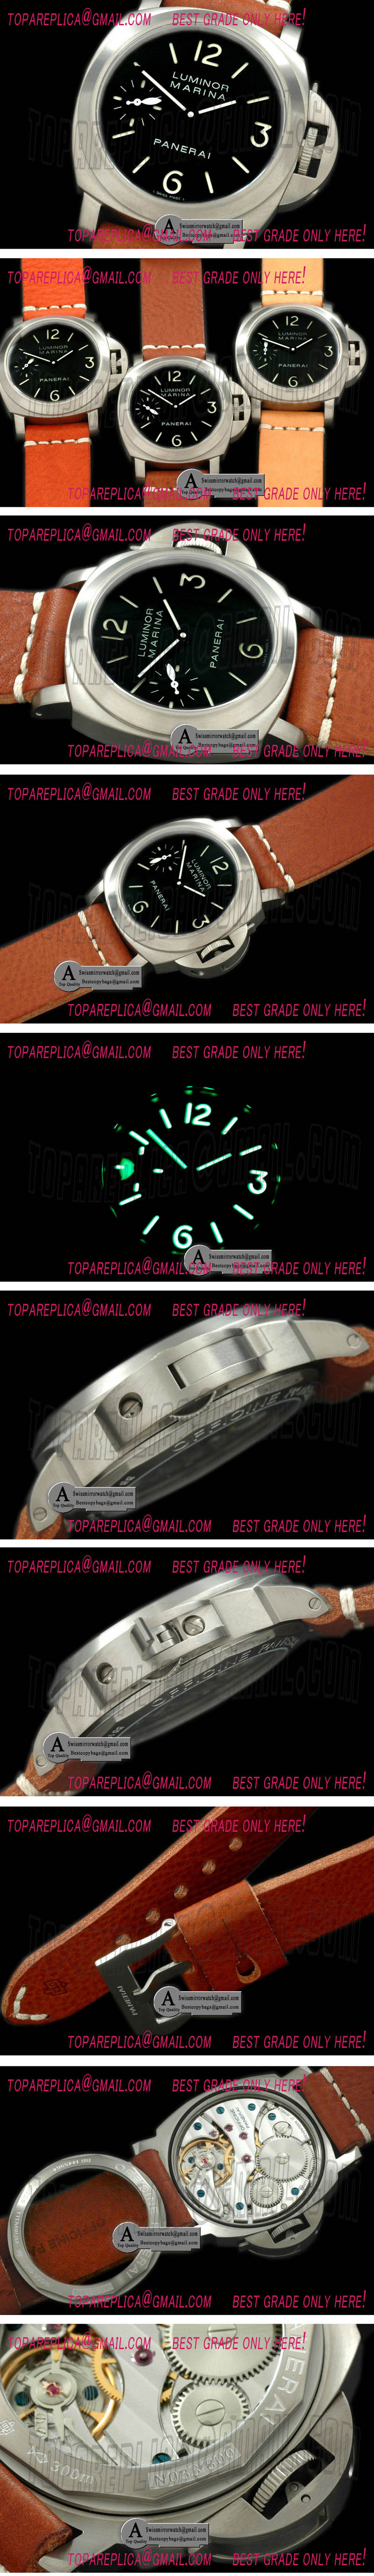 Panerai Pam 177 N Titanium/Leather Black Asia 6497 Replica Watches